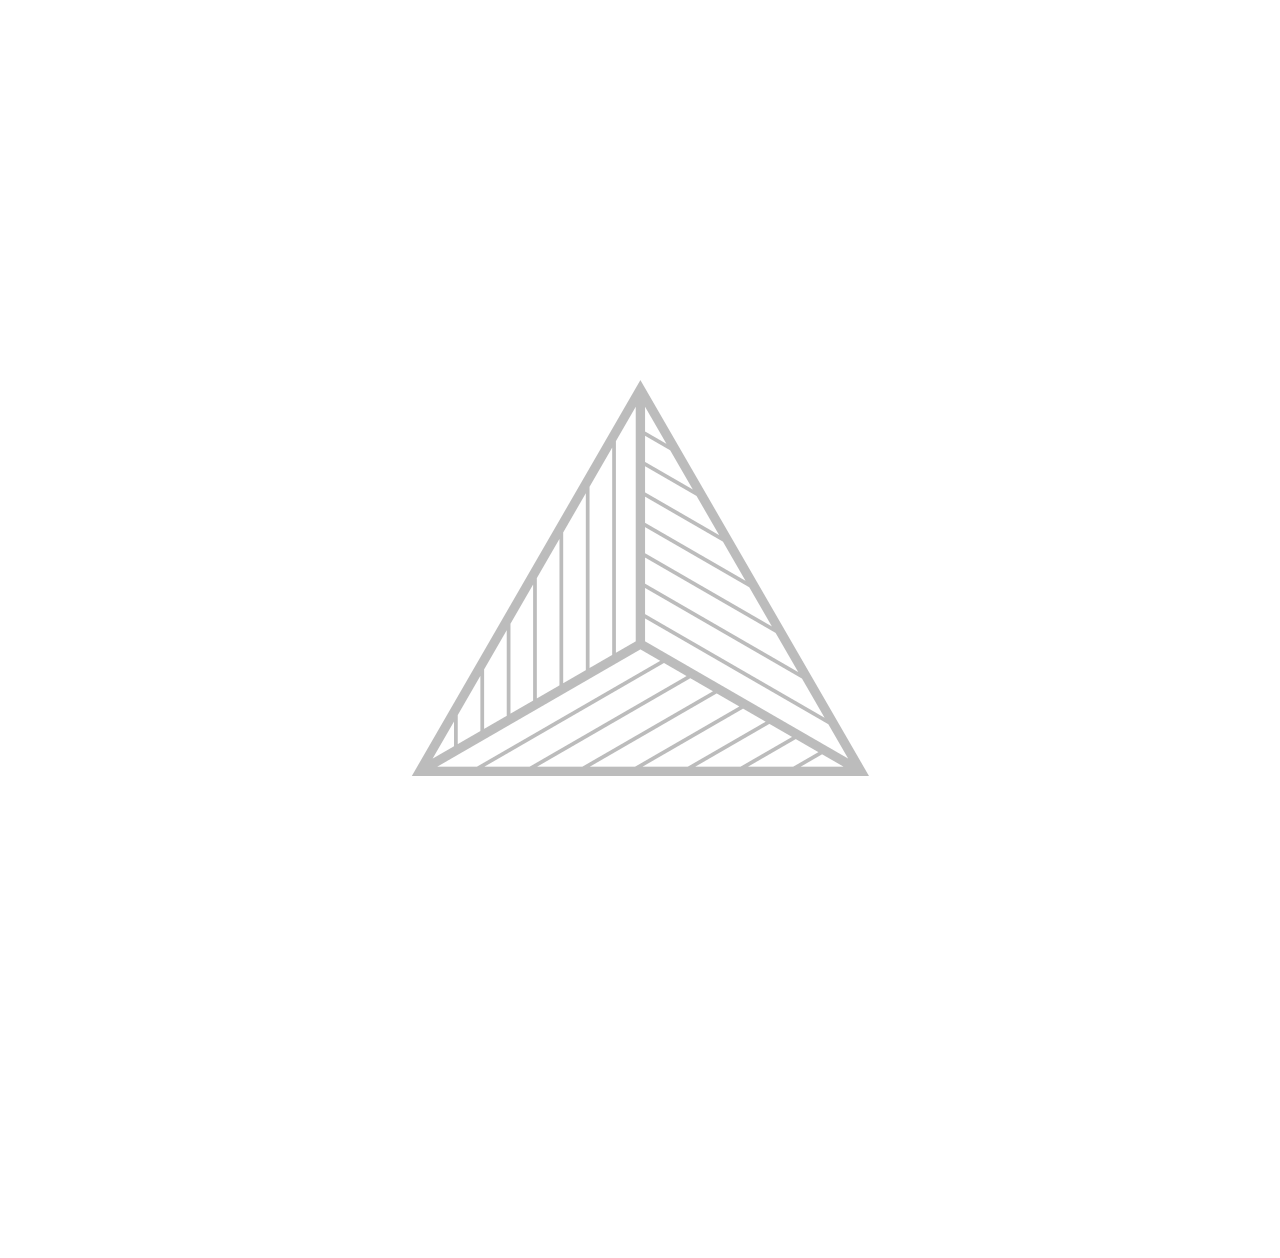 Art for Good & Good for Art's logo